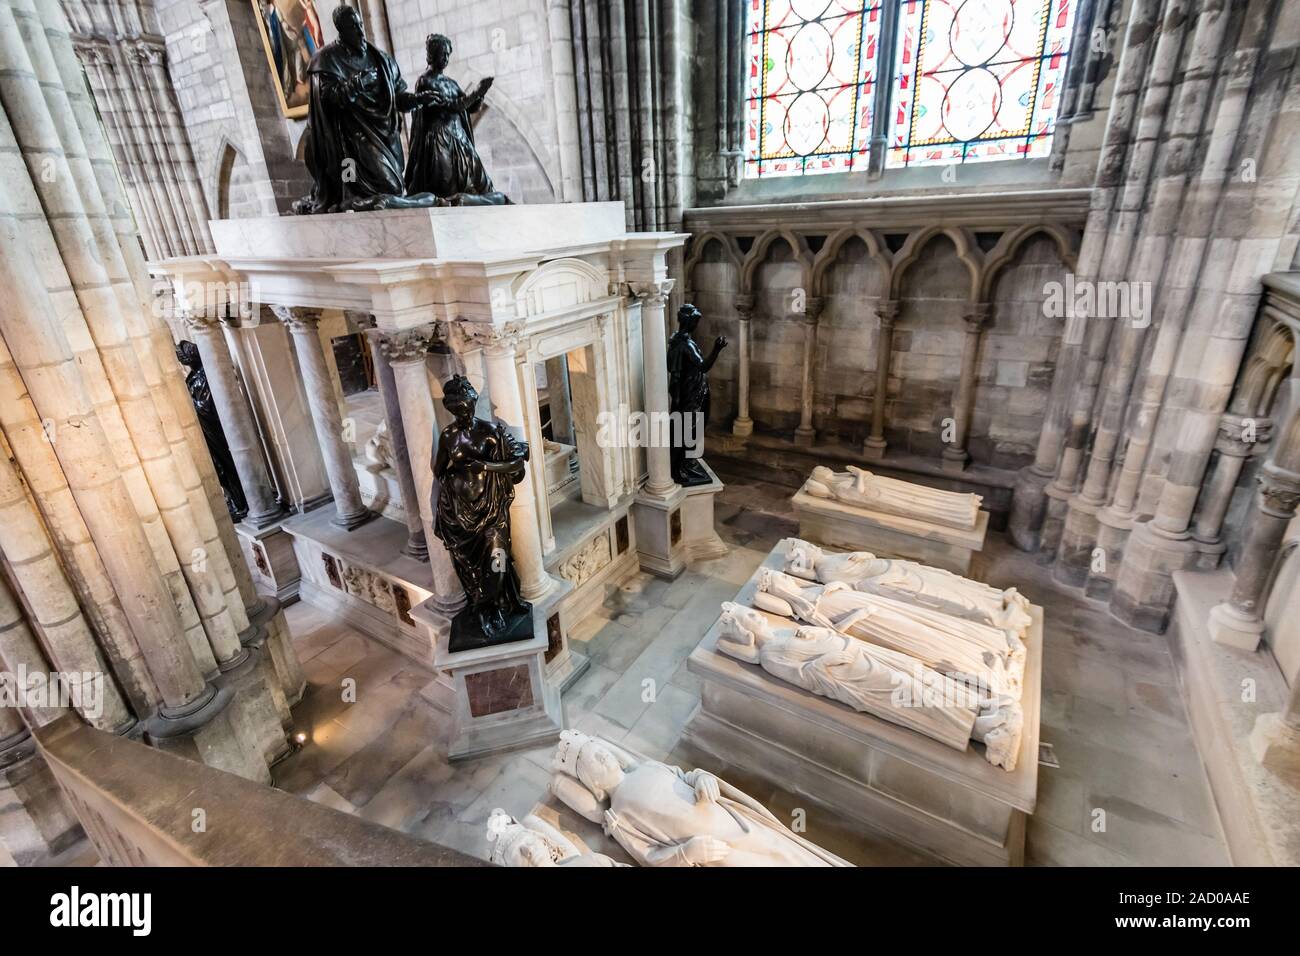 La tumba de Enrique II y Catalina de Médicis y esculturas yacentes de los reyes de Francia en la Catedral Basílica de Saint-Denis Foto de stock